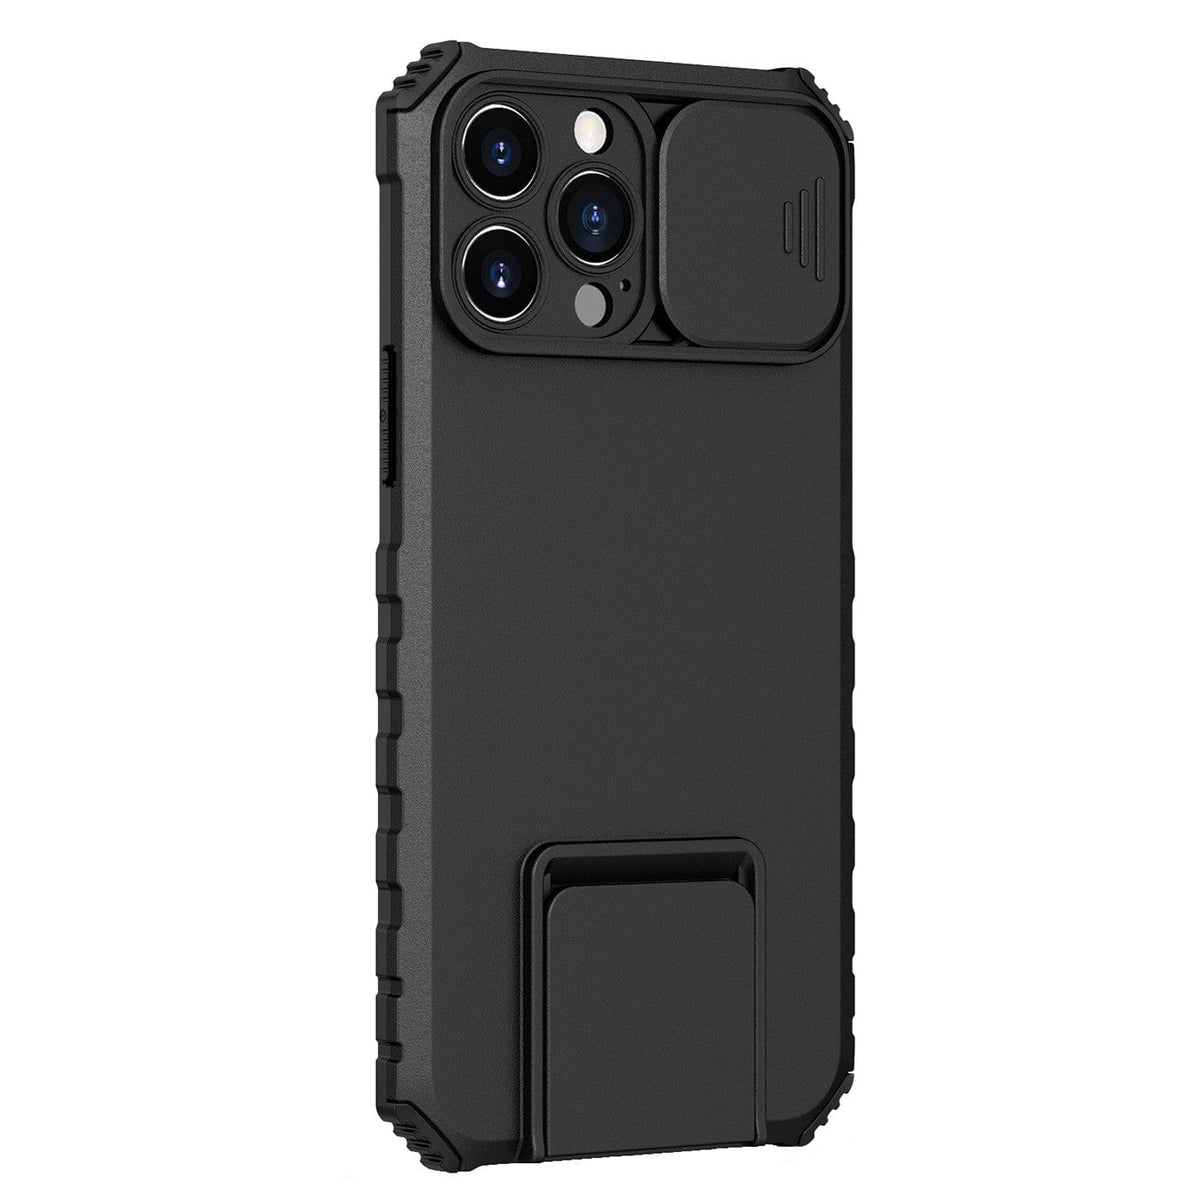 Husa Defender cu Stand pentru iPhone 12 Pro Max, Negru, Suport reglabil, Antisoc, Protectie glisanta pentru camera